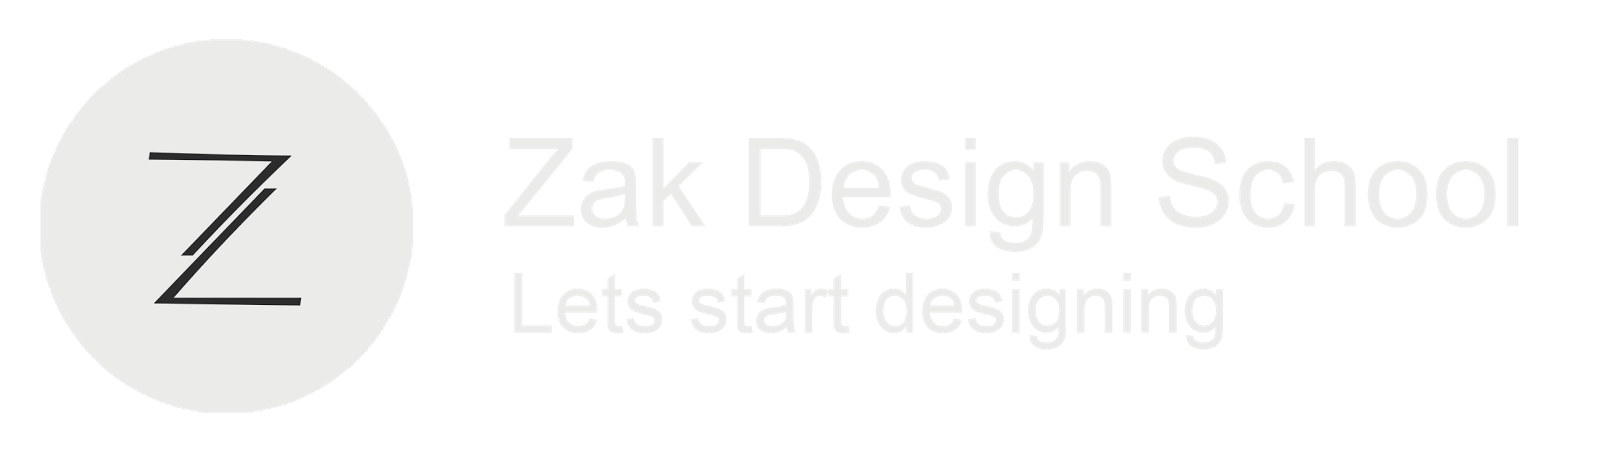 Zak Design School